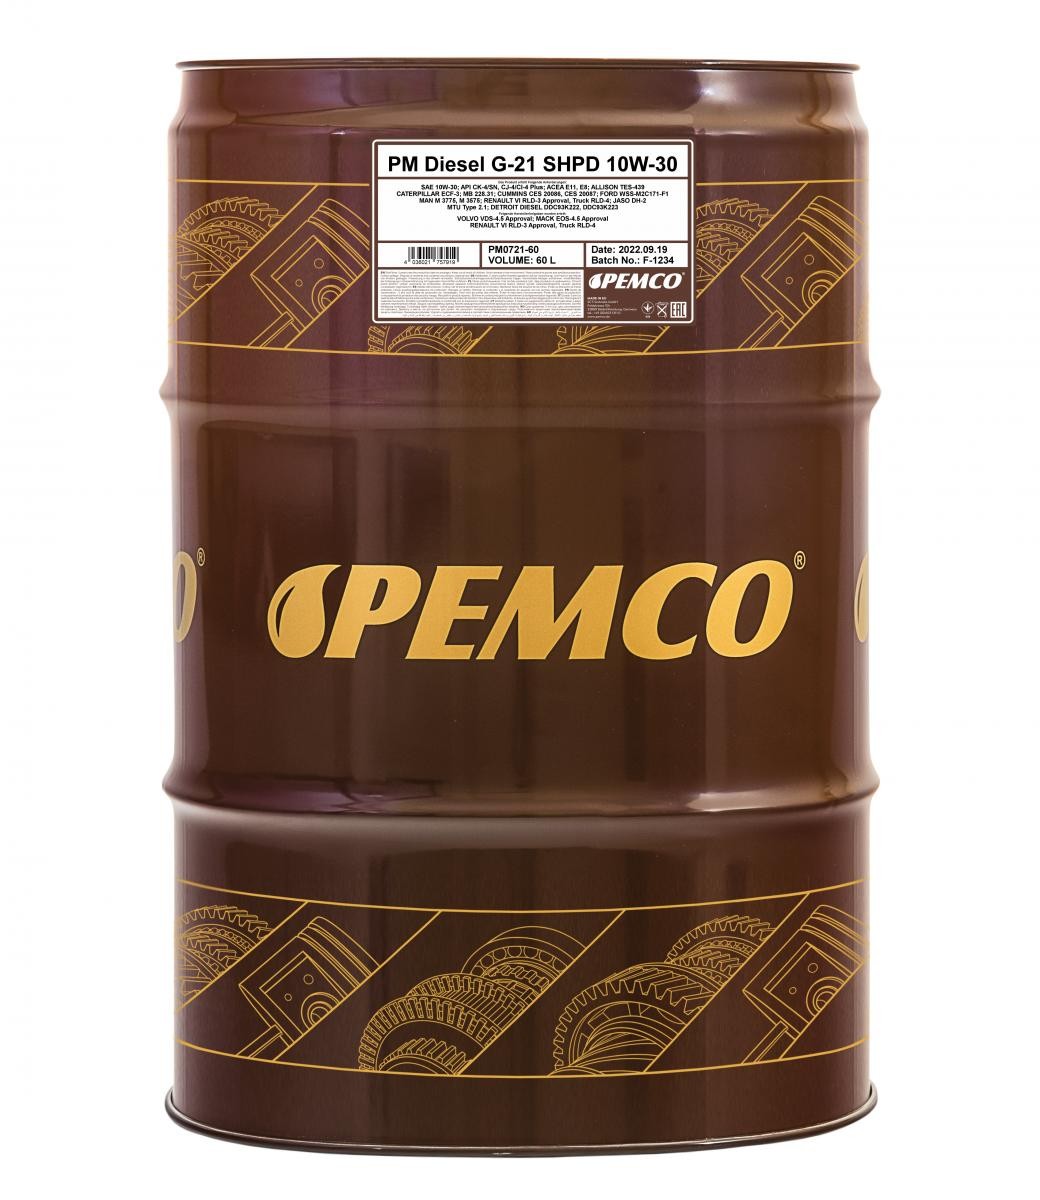 PEMCO Truck SHPD, DIESEL G-21 10W-30, 60l, Part Synthetic Oil Motor oil PM0721-60 buy